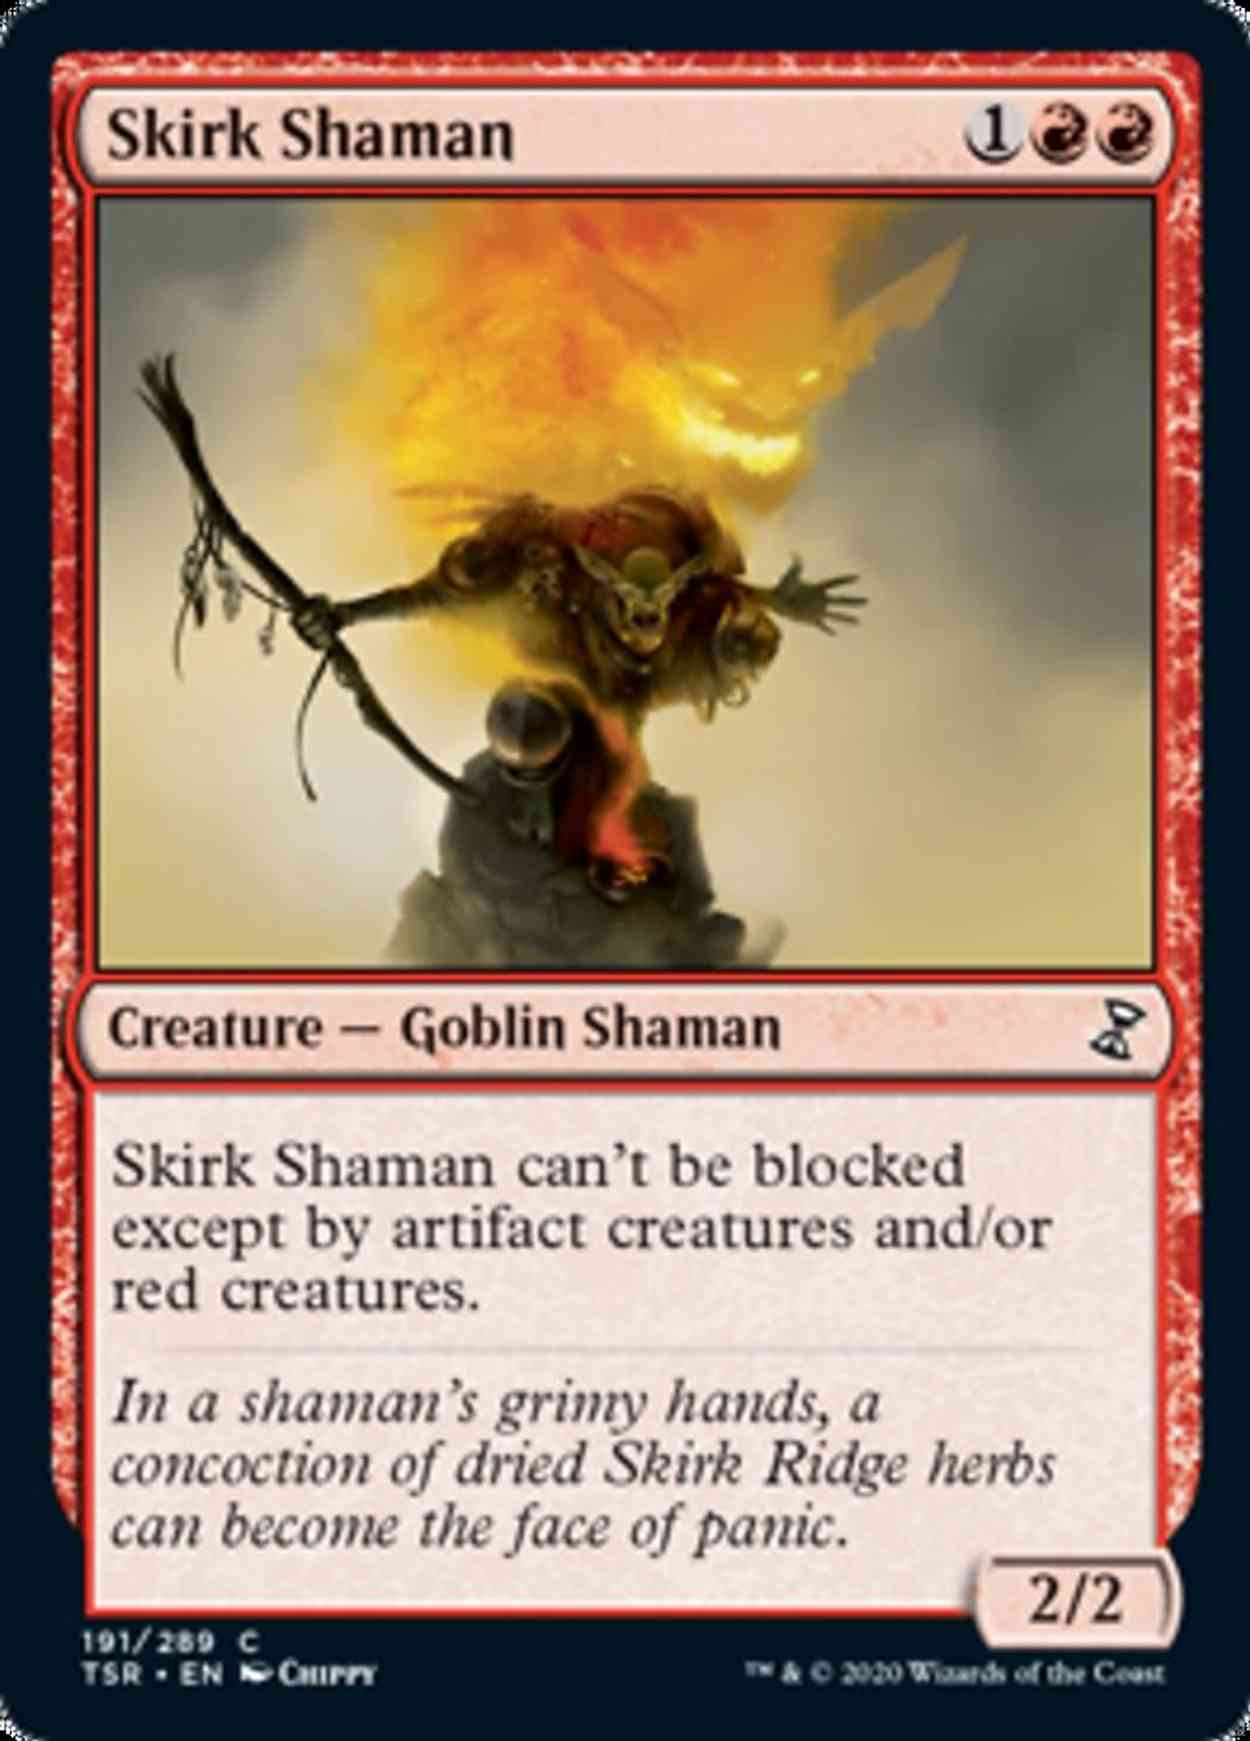 Skirk Shaman magic card front